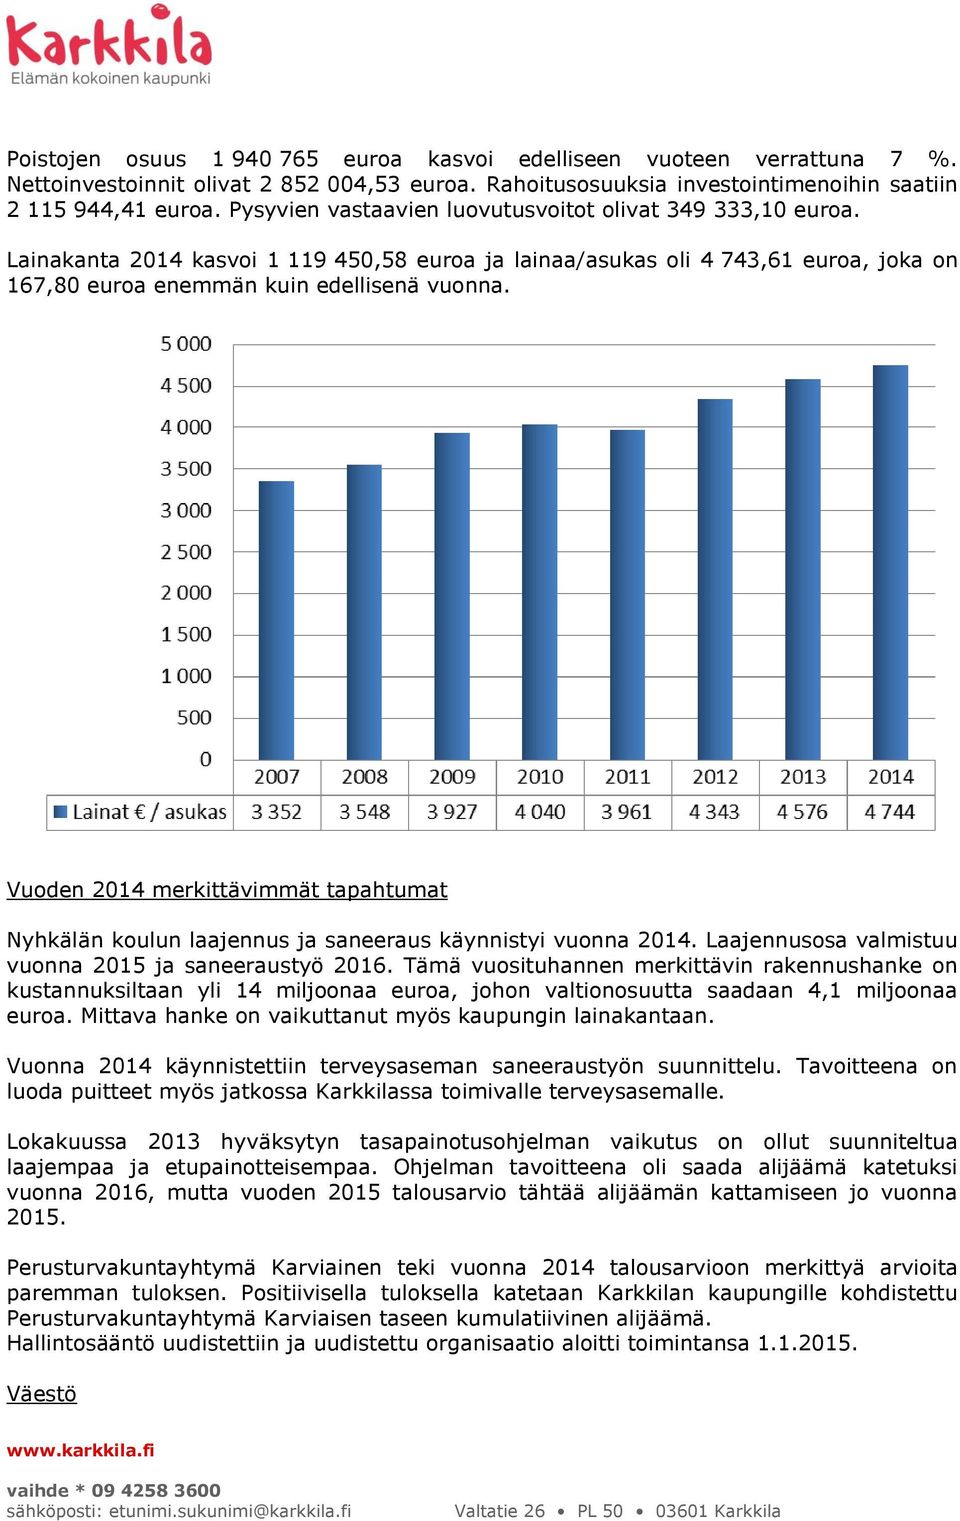 Vuoden 2014 merkittävimmät tapahtumat Nyhkälän koulun laajennus ja saneeraus käynnistyi vuonna 2014. Laajennusosa valmistuu vuonna 2015 ja saneeraustyö 2016.